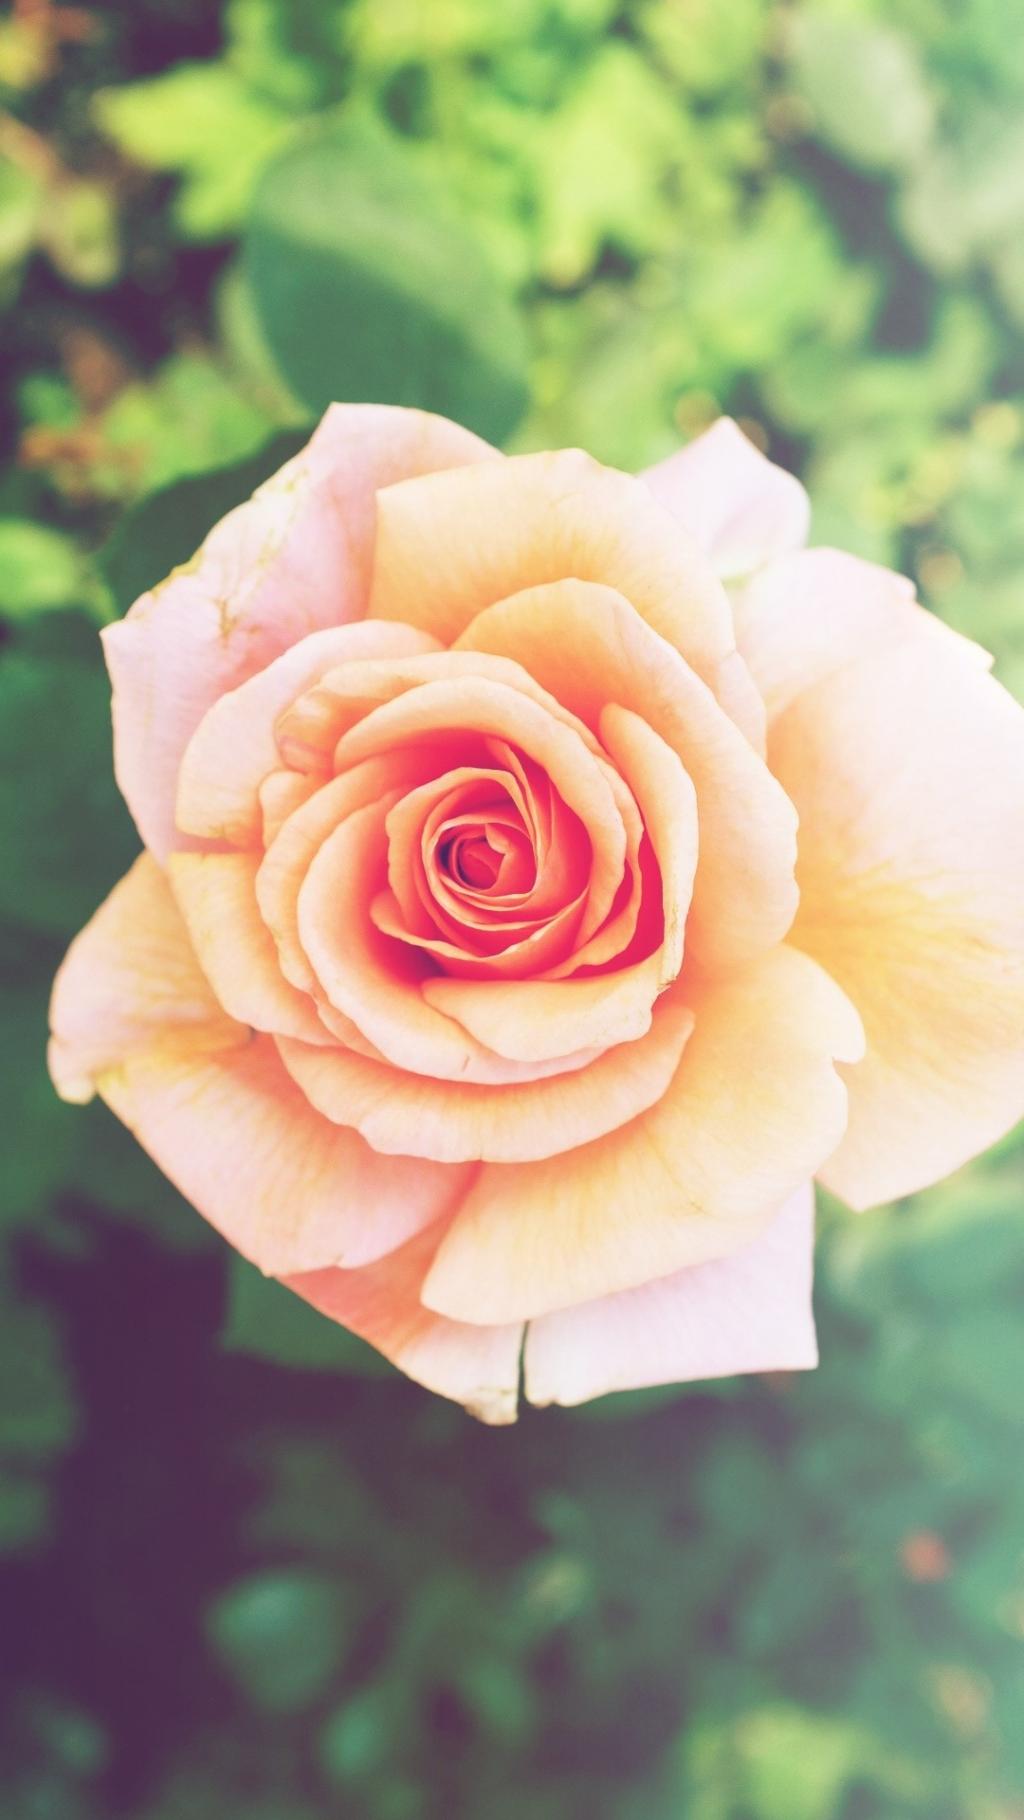 粉红玫瑰花卉iPhone 6 Plus高清壁纸